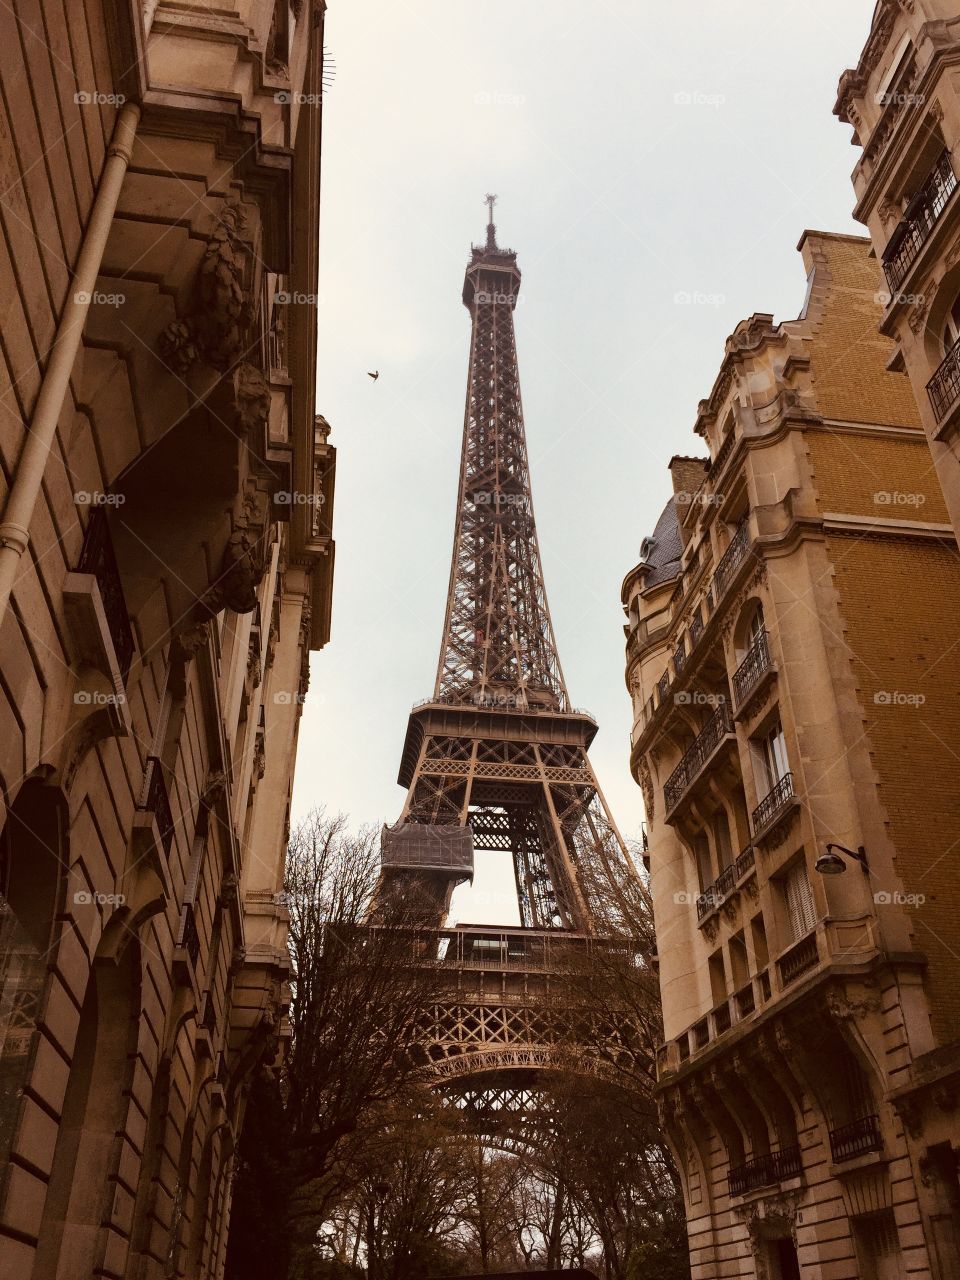 Eiffel looking good! 